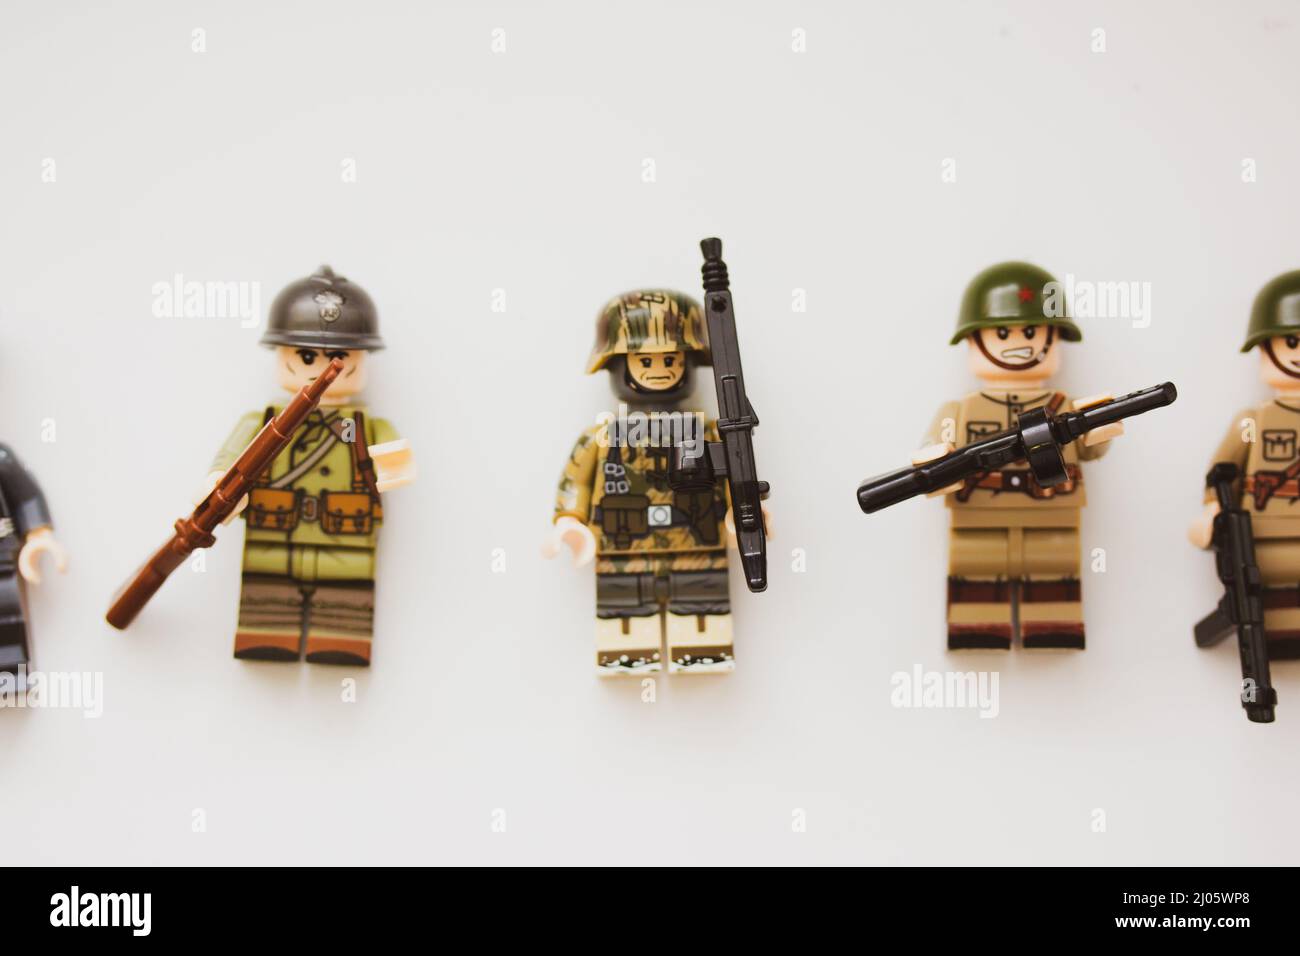 Lego n'a pas fabriqué de figures à l'effigie du régiment ukrainien Azov